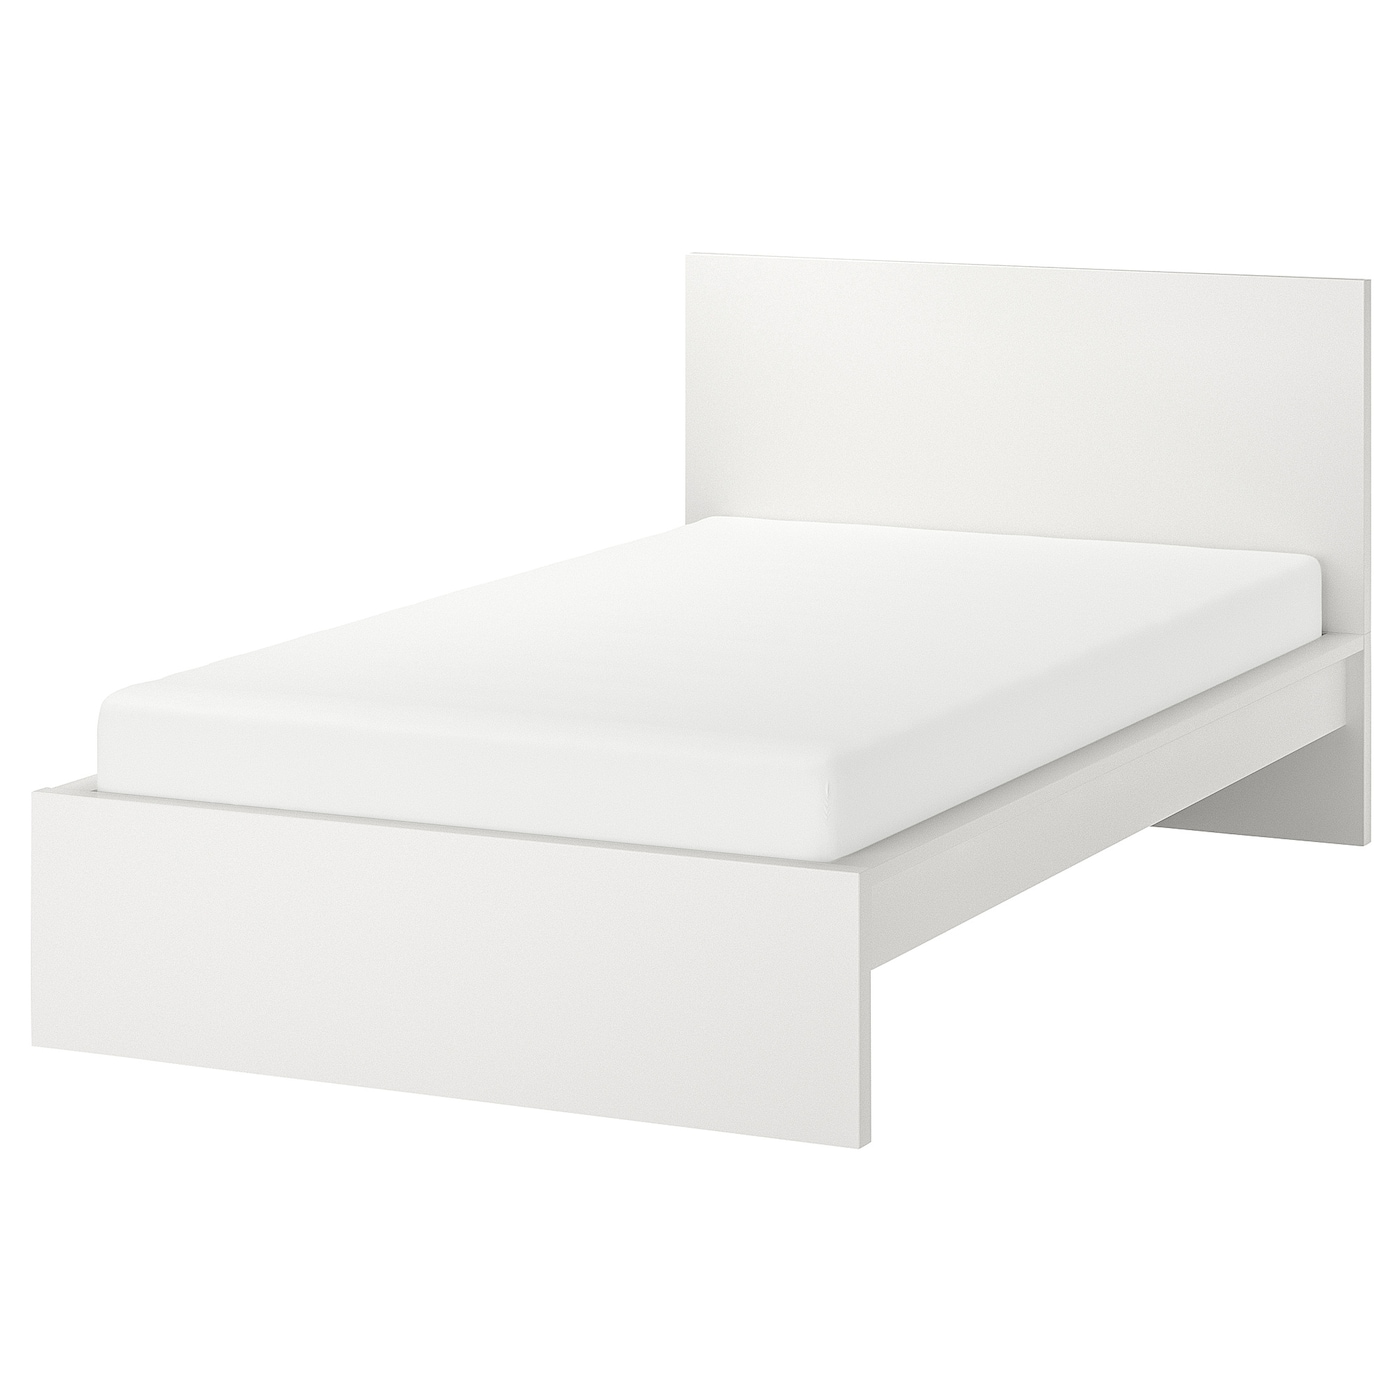 Кровать одноярусная - IKEA MALM/LURÖY/LURОY/МАЛЬМ/ЛУРОЙ ИКЕА  , 120x200  см, белый